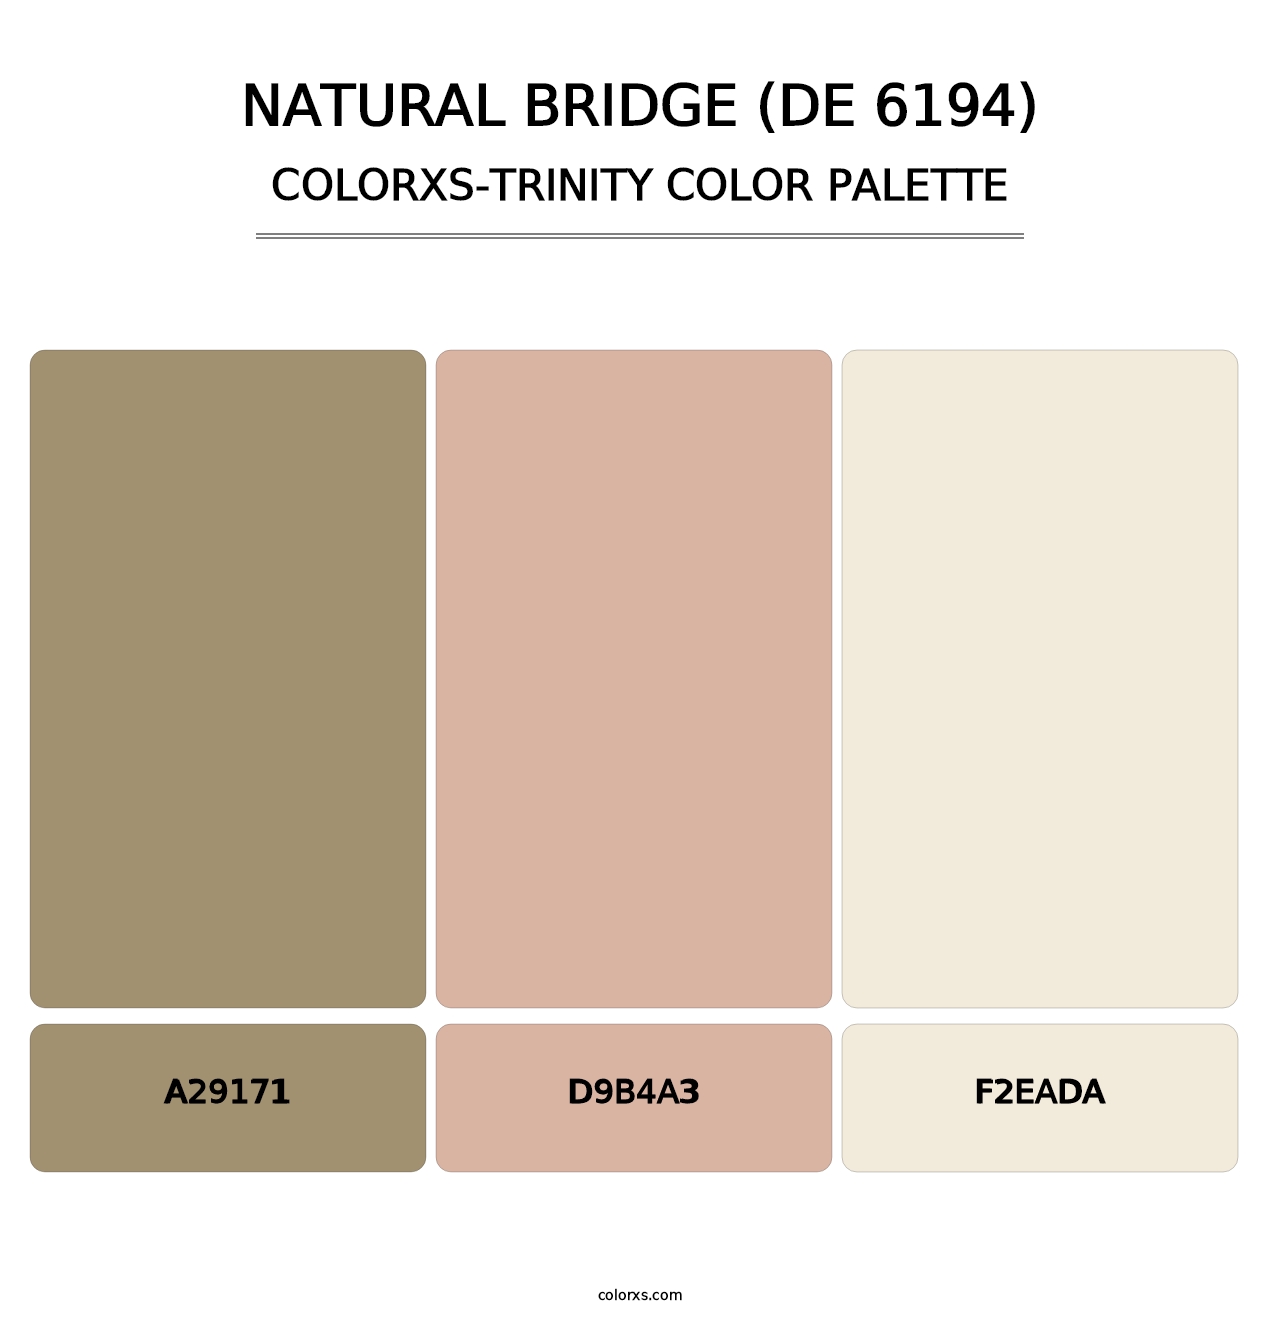 Natural Bridge (DE 6194) - Colorxs Trinity Palette